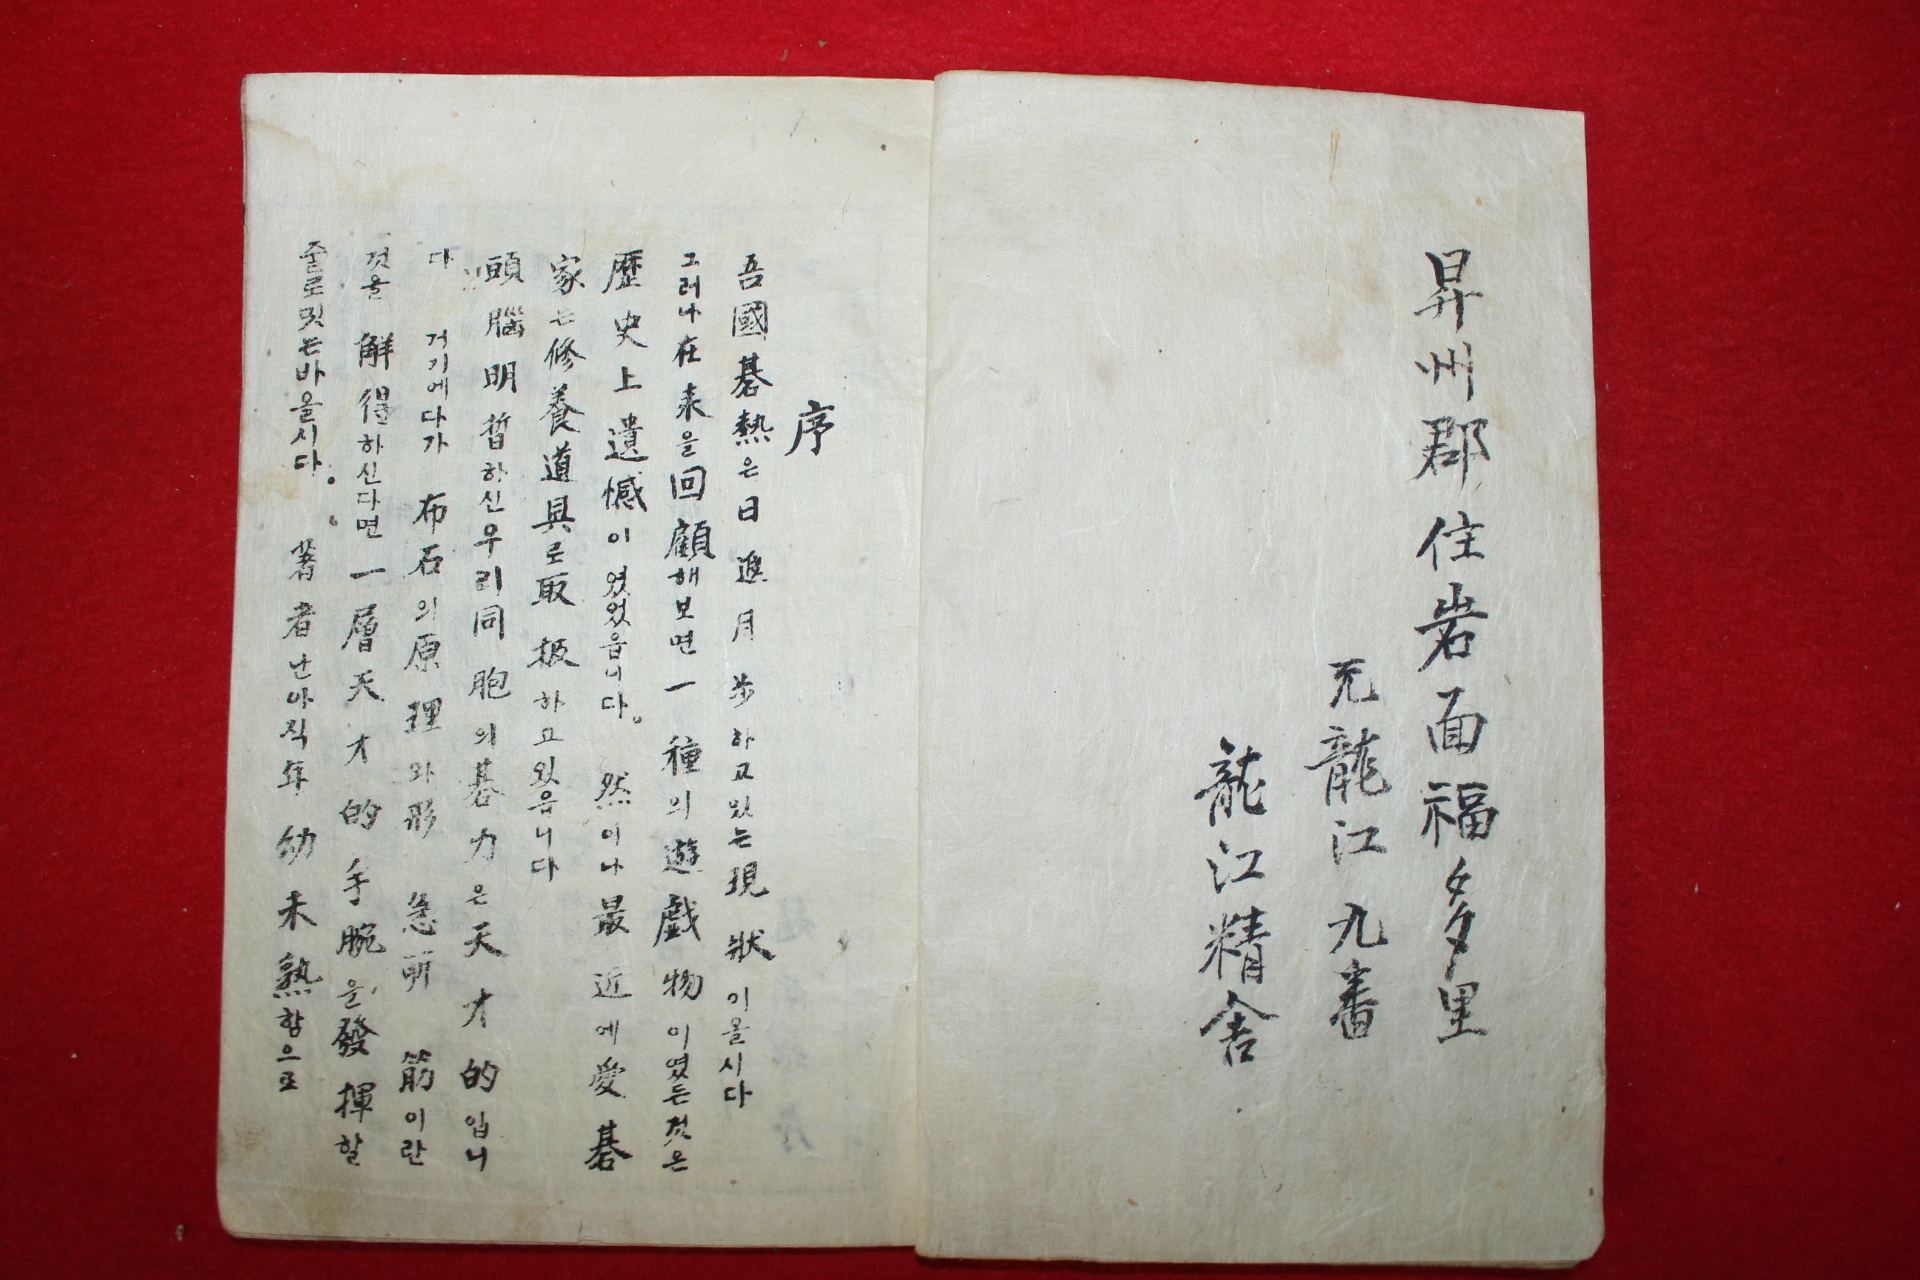 1946년 소장처가 확인되지않는 극희귀본 해방후 최초바둑책 조남철(趙南哲)위기보(圍碁譜)